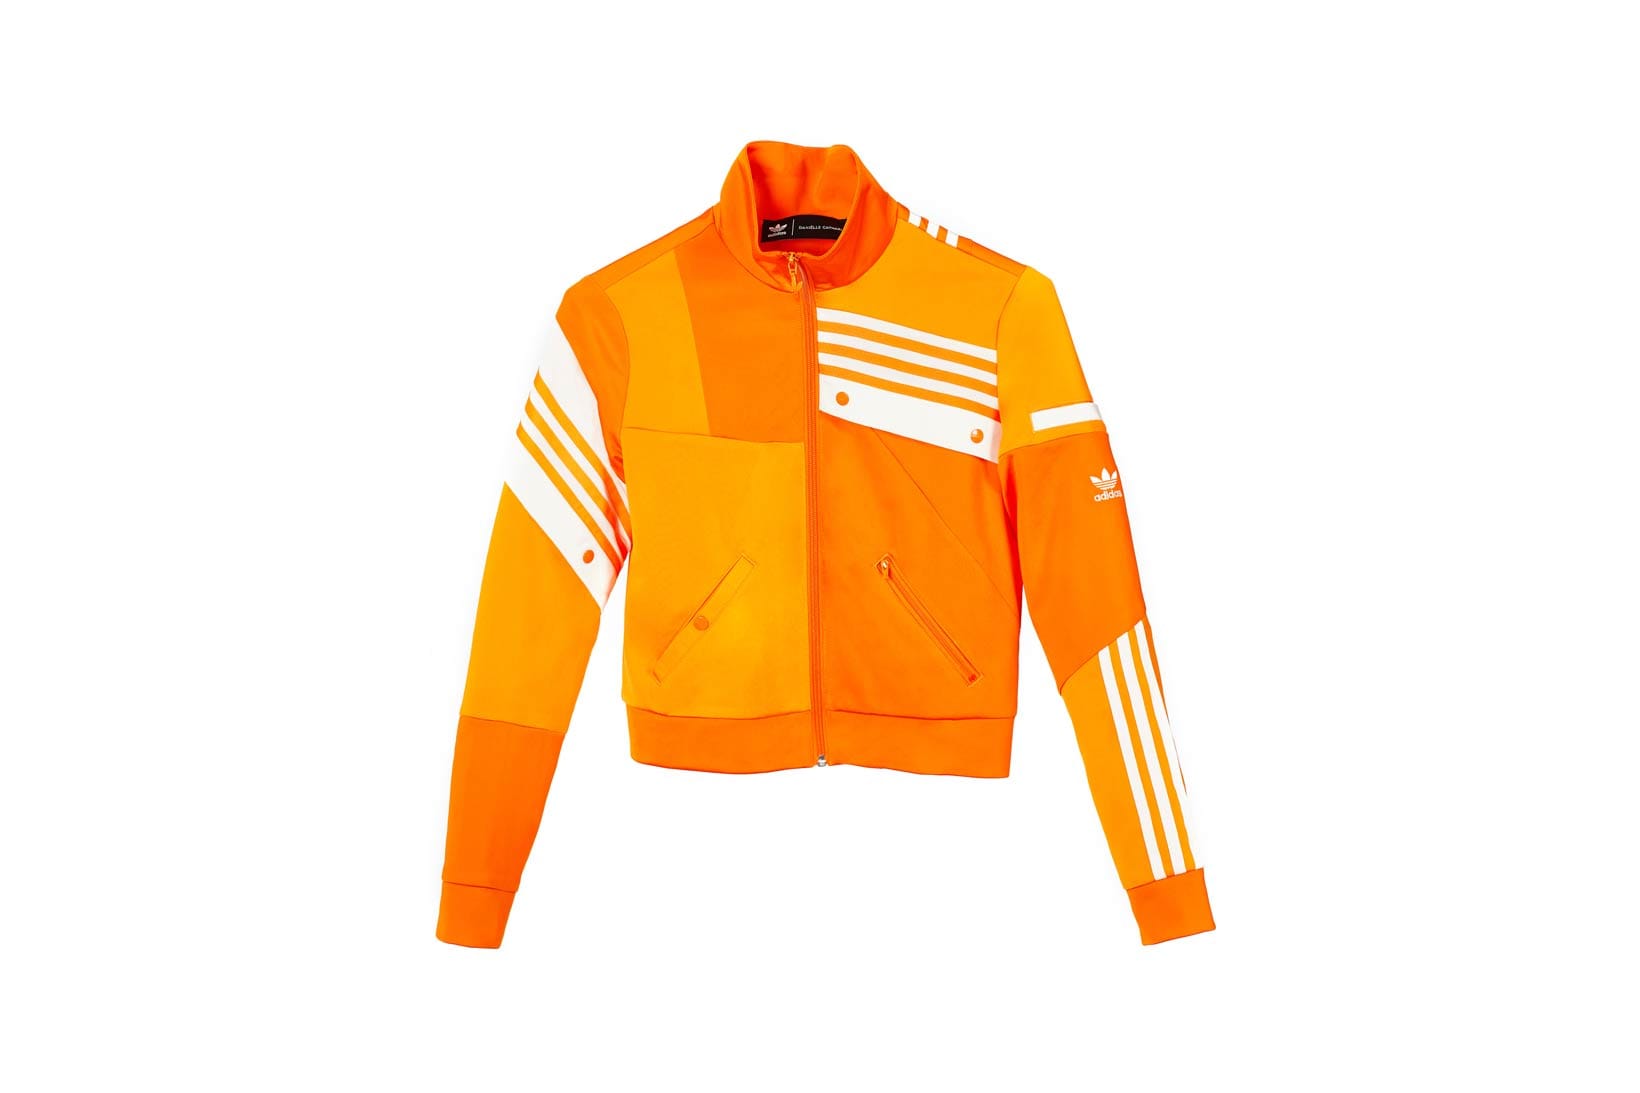 kendall jenner orange adidas jacket